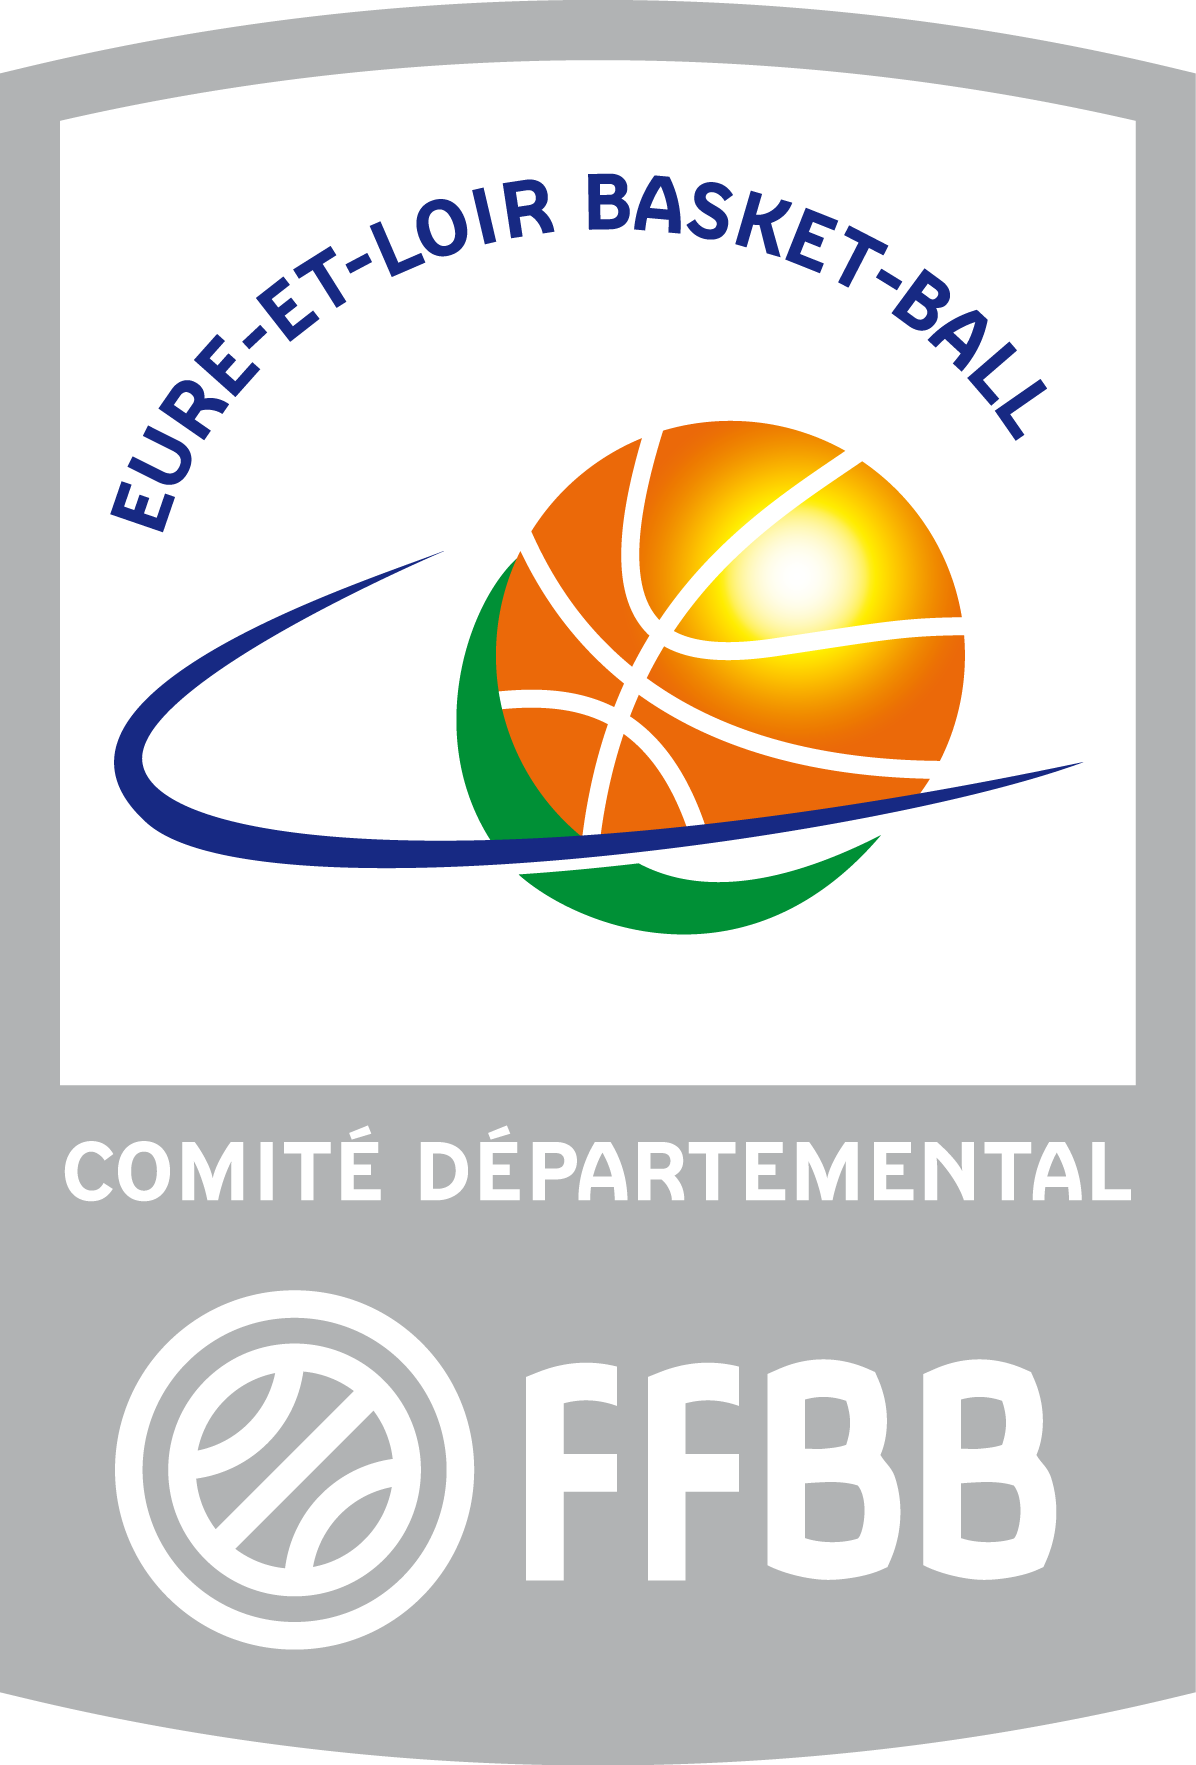 Comité d'Eure et Loir de Basket